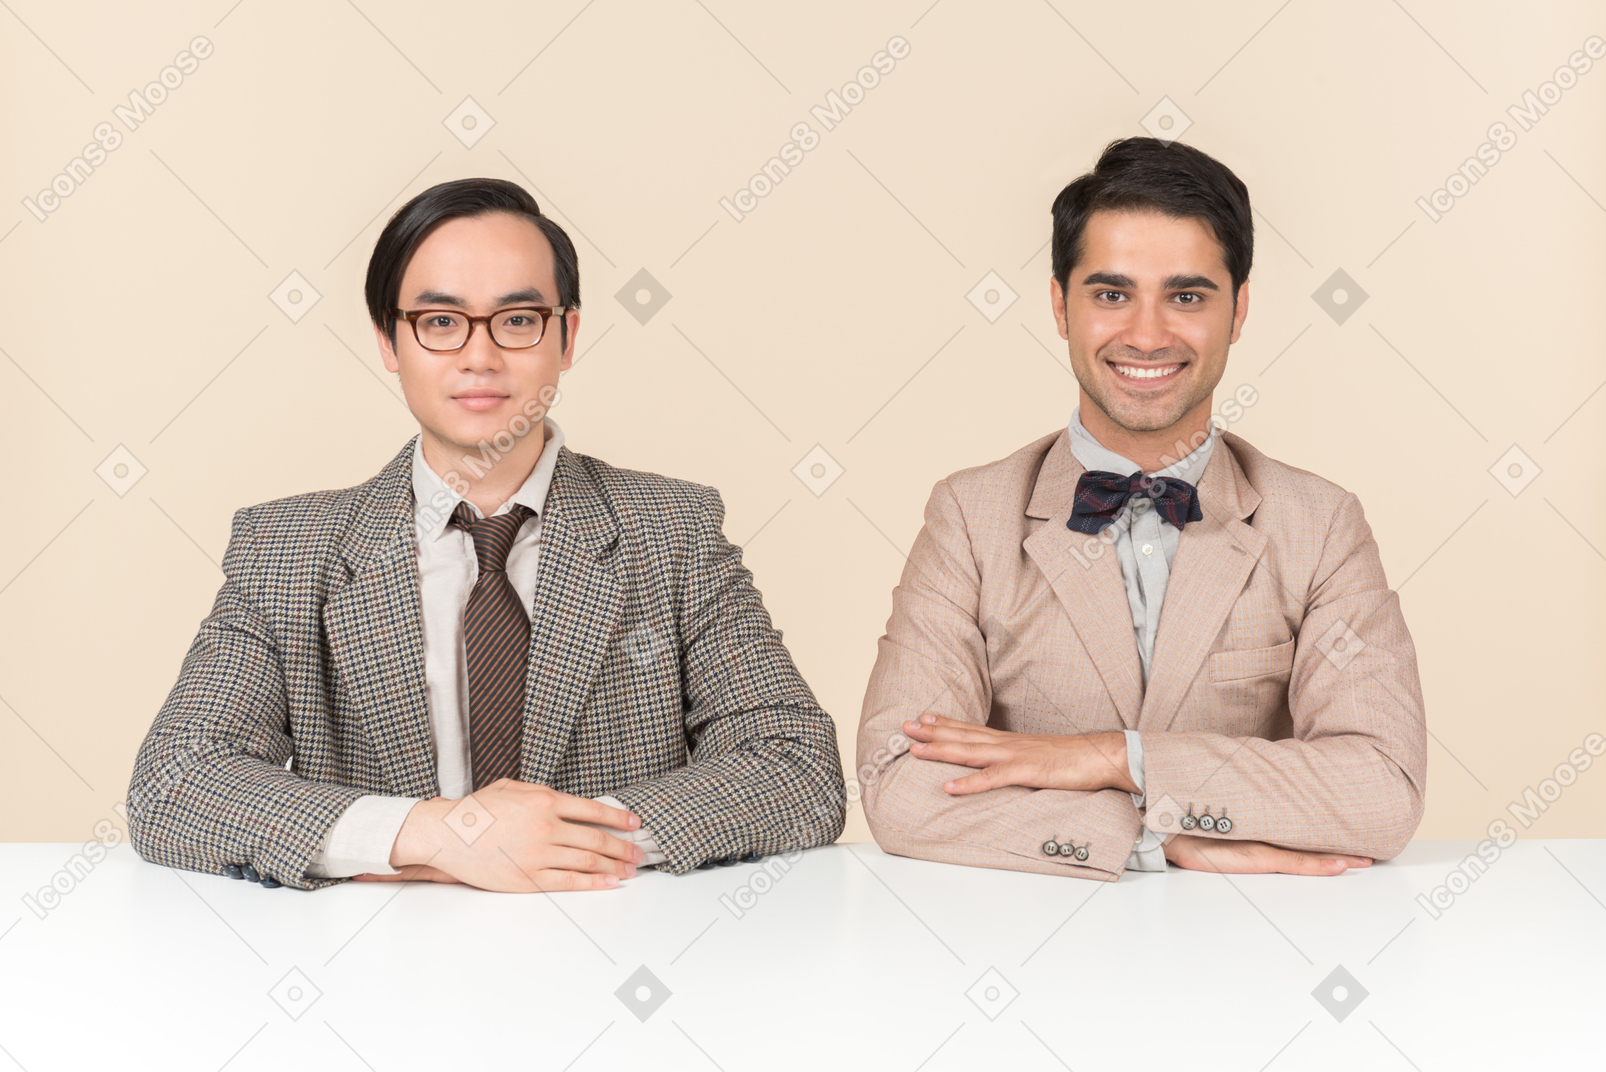 Zwei junge nerds sitzen mit verschränkten armen am tisch